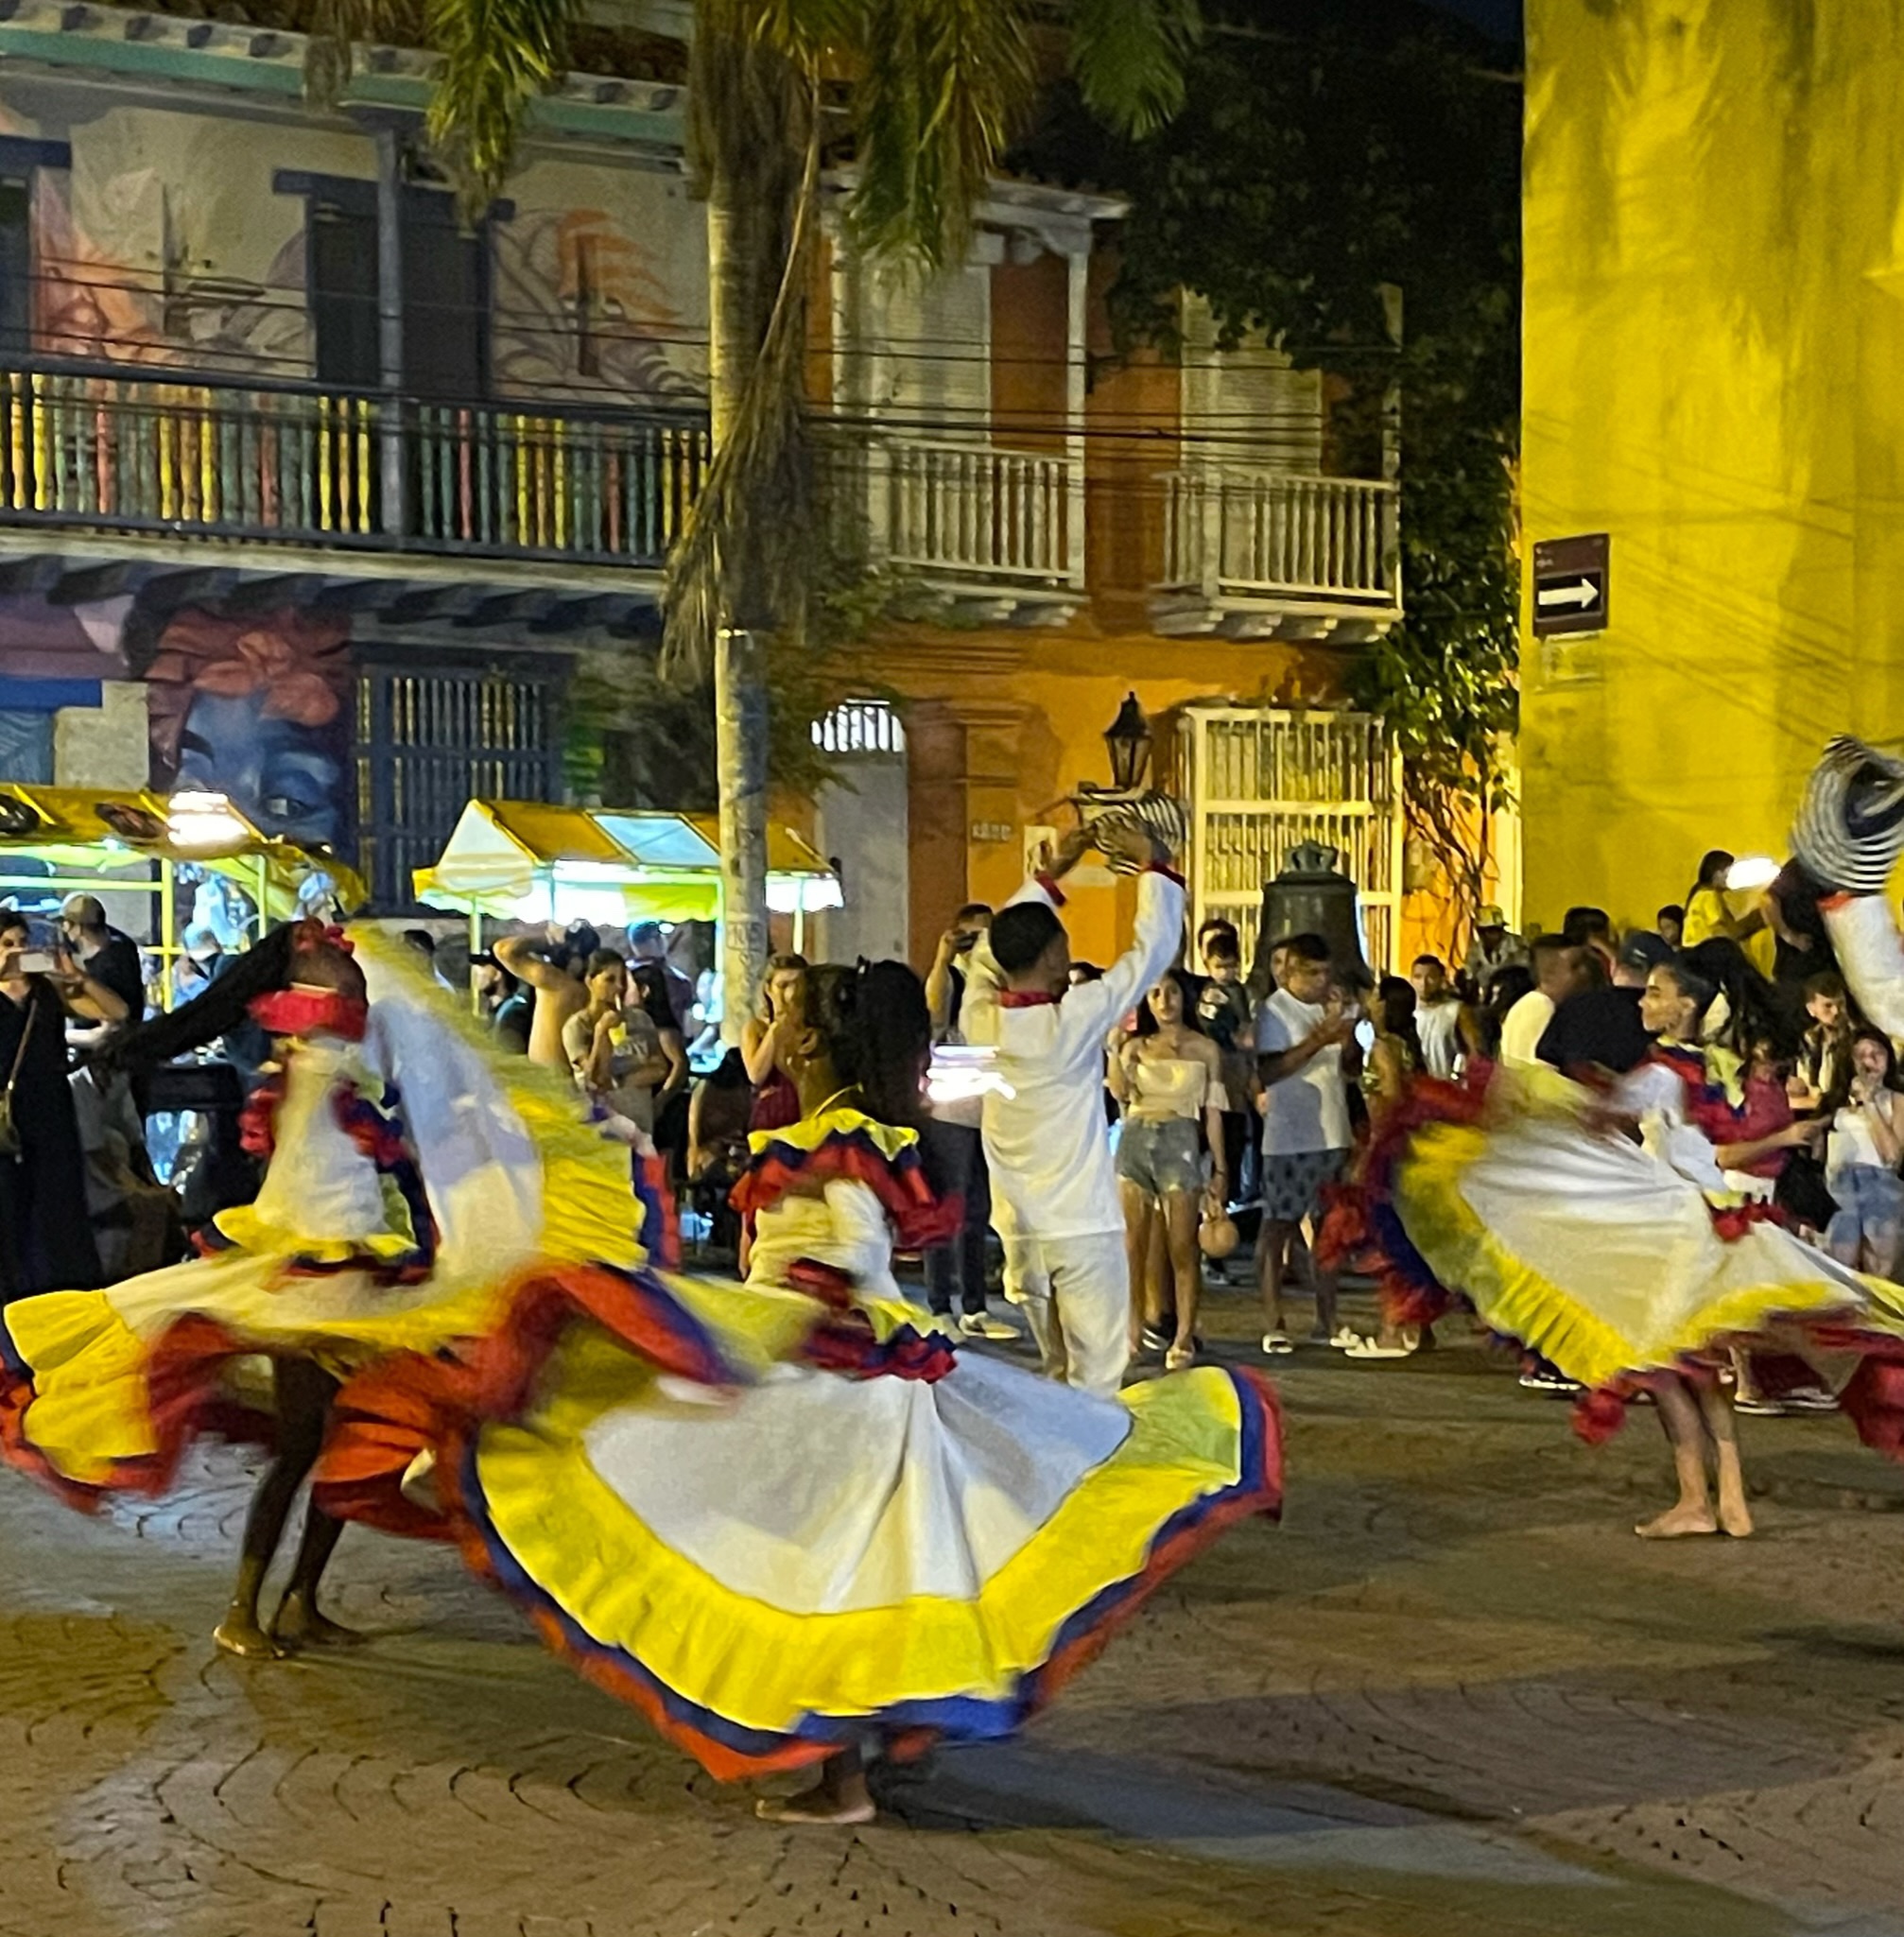 Last destination Cartagena de Indias